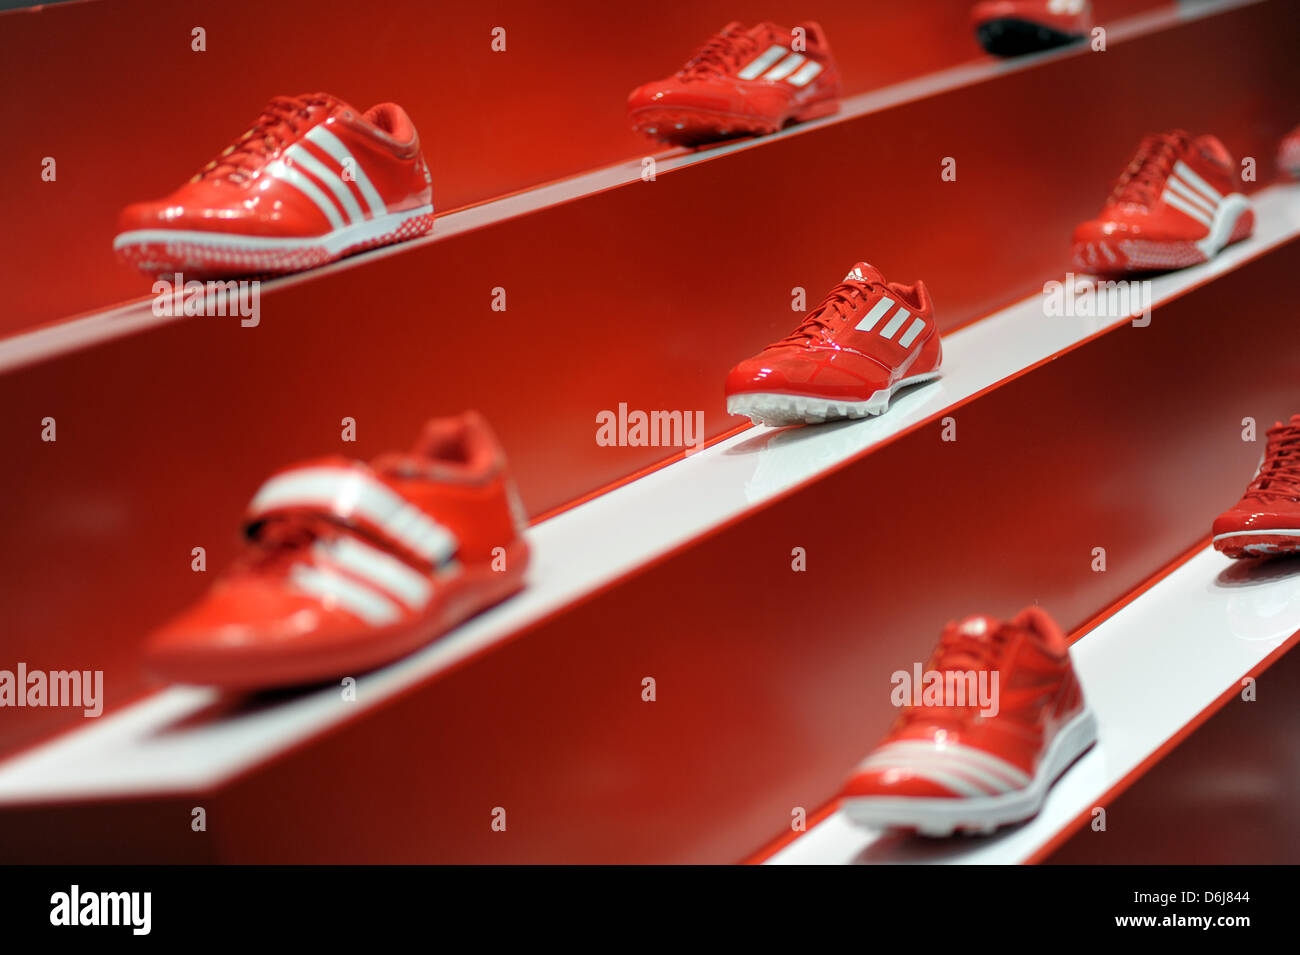 Red scarpe da calcio Adidas sono sul display durante la conferenza stampa  annuale della società risultati in Herzogenaurach, Germania, 07 marzo 2012.  Articoli sportivi business è in piena espansione e adidas sta